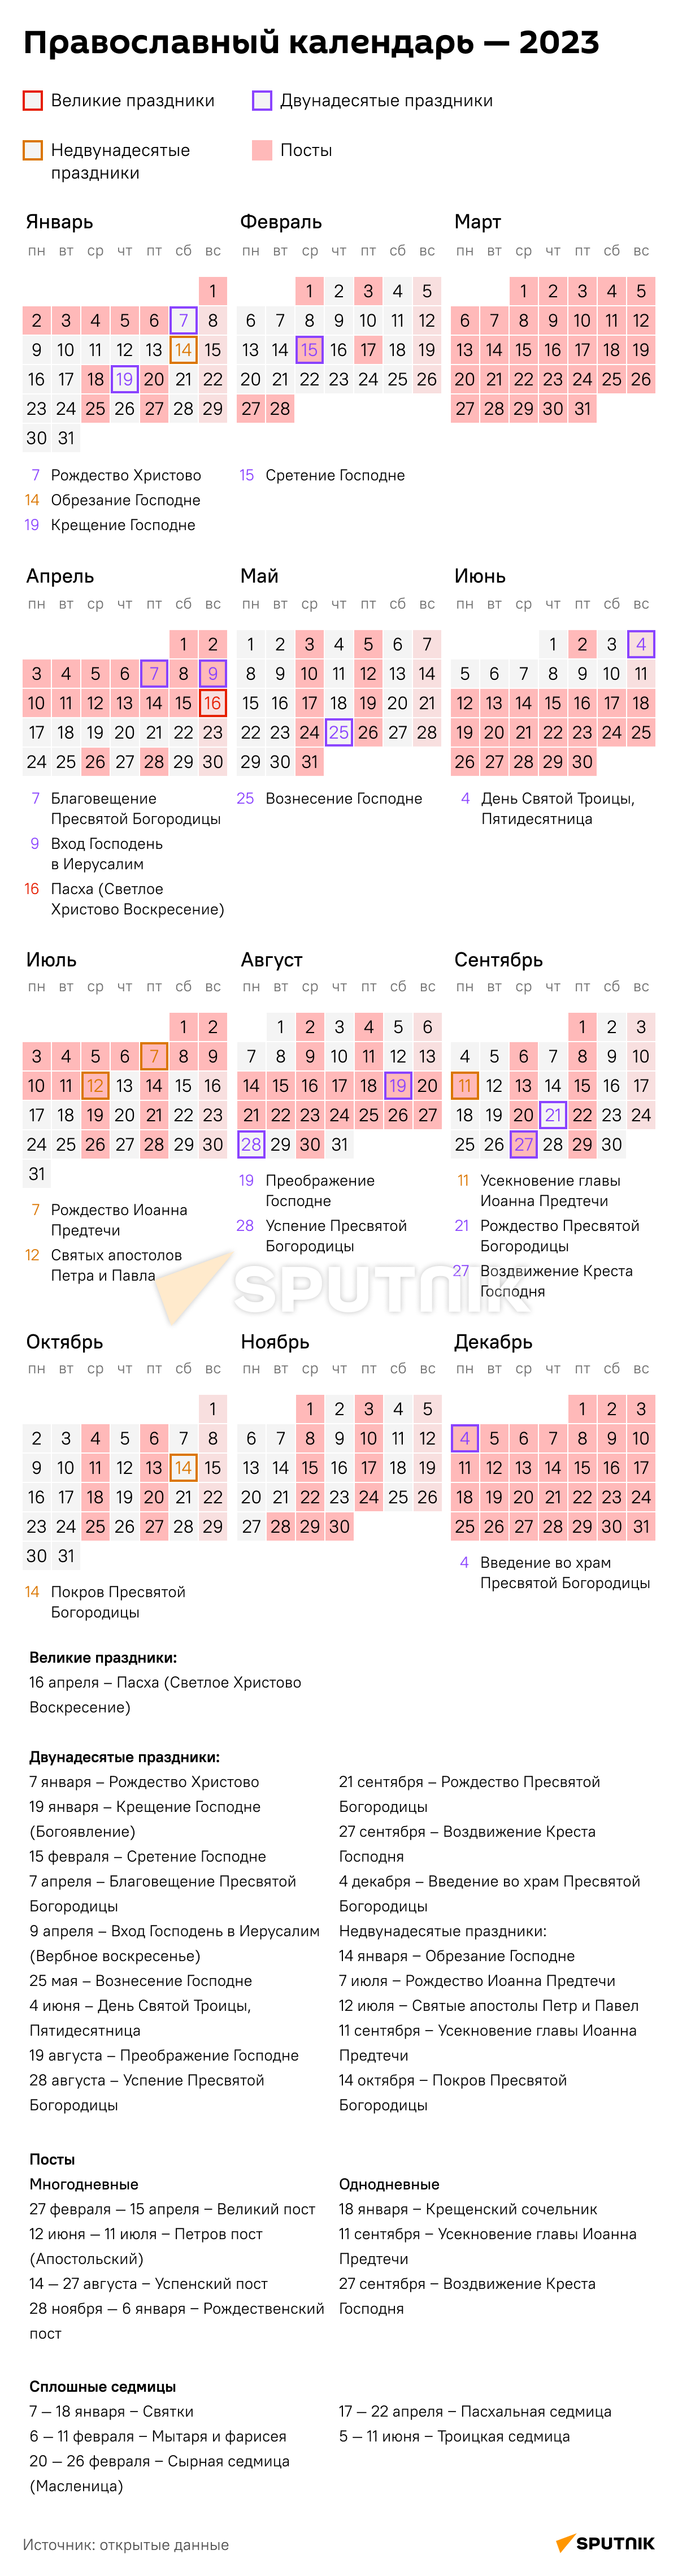 Православный календарь на 2020 год - 20.12.2019, Sputnik Таджикистан